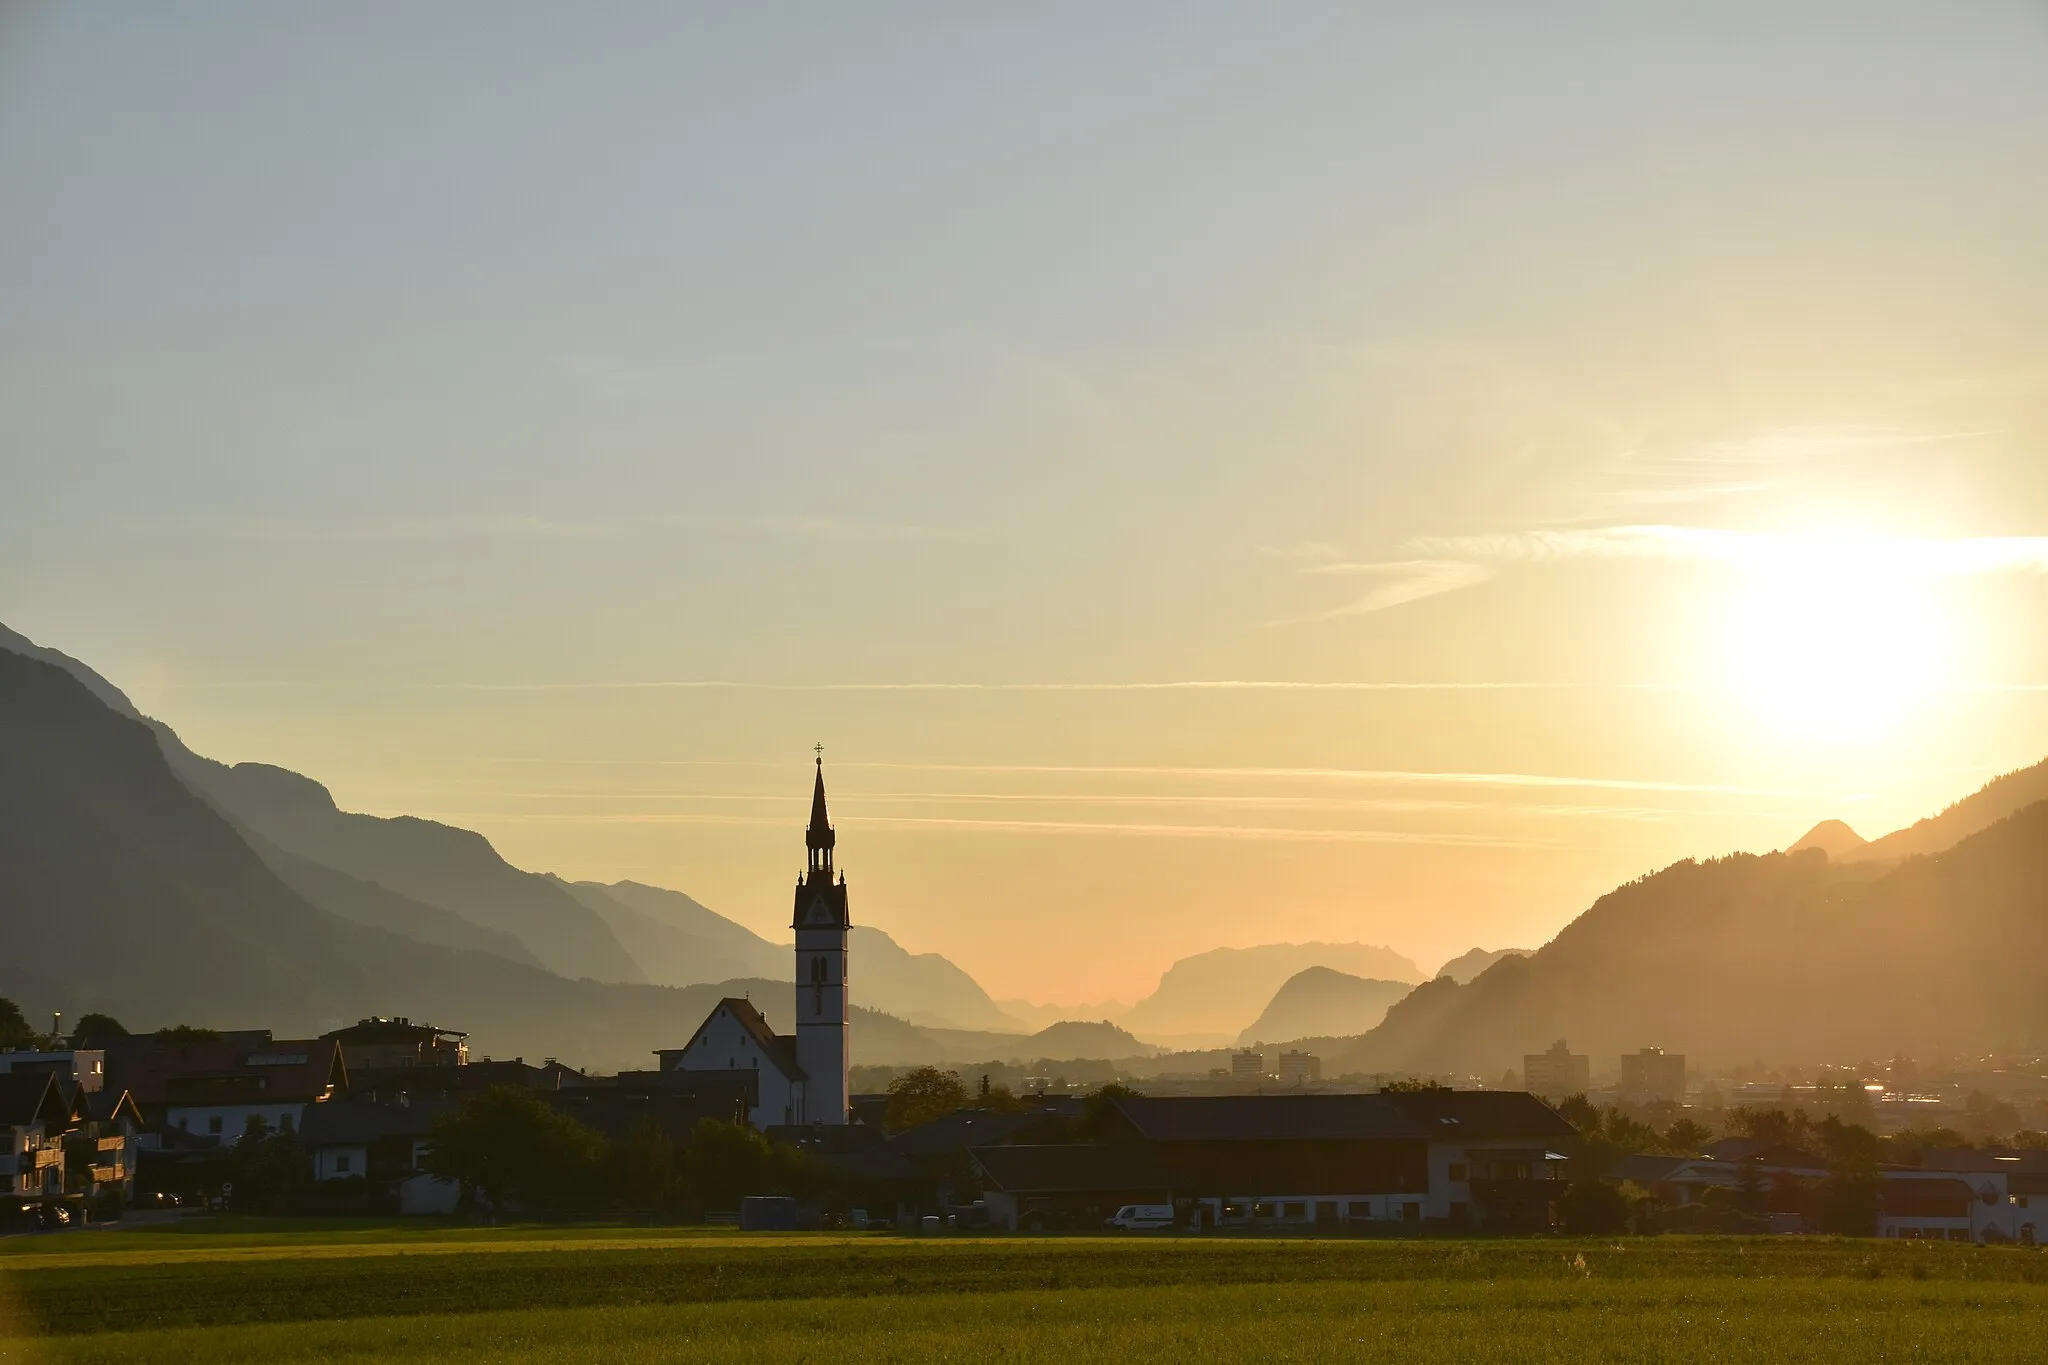 Bild von Tirol